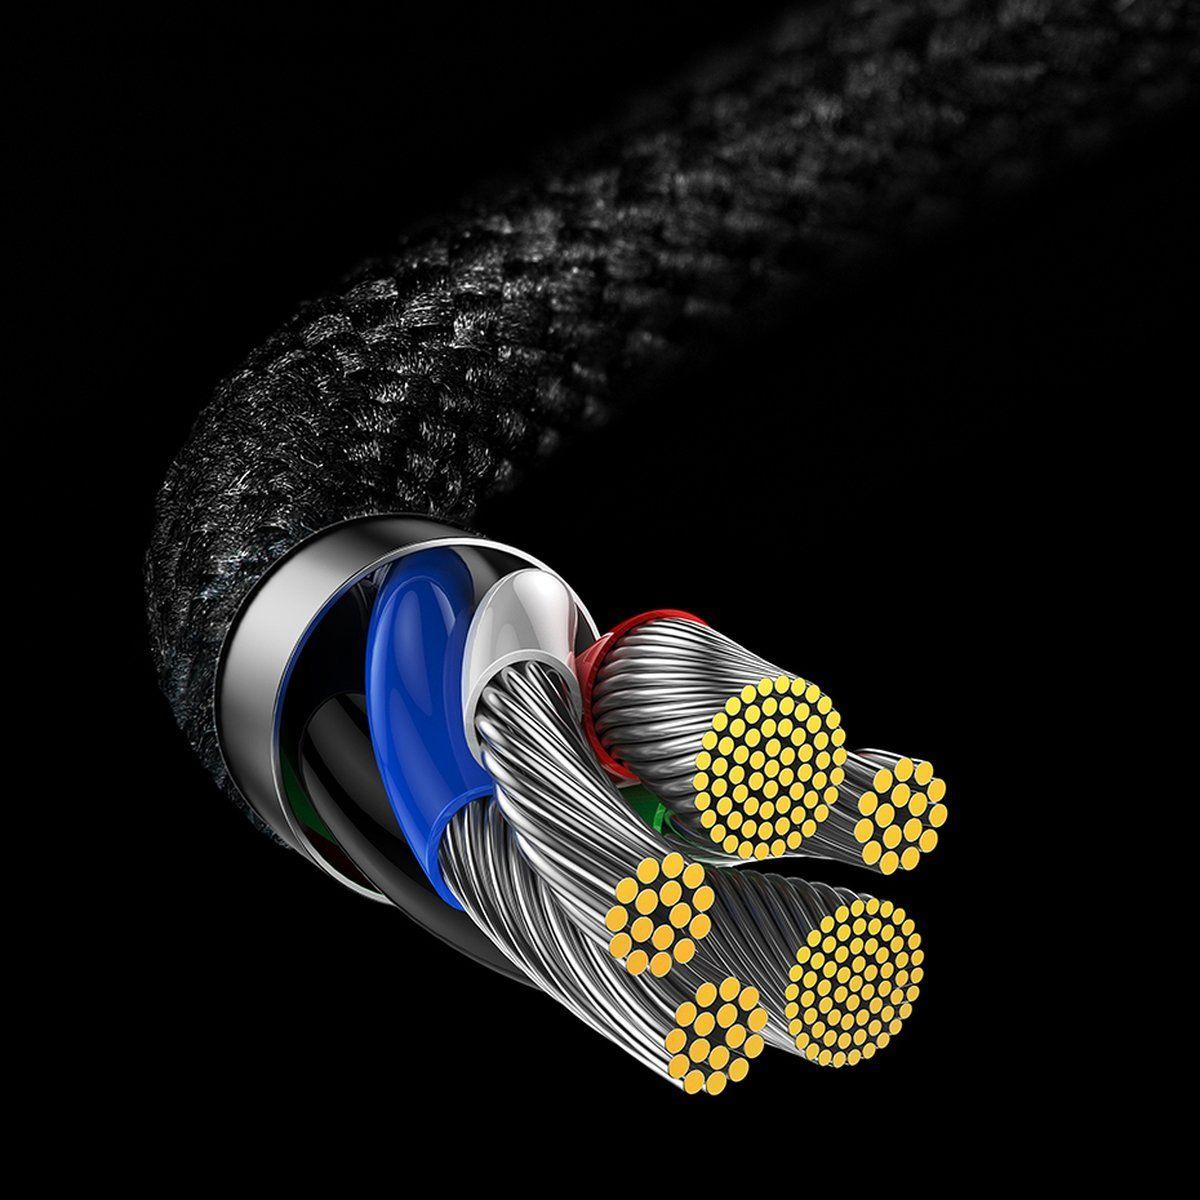 Baseus MVP 2 Elbow - tvarovaný datový kabel pro rychlé nabíjení Typ-C až iP 20W 1m černo - červený